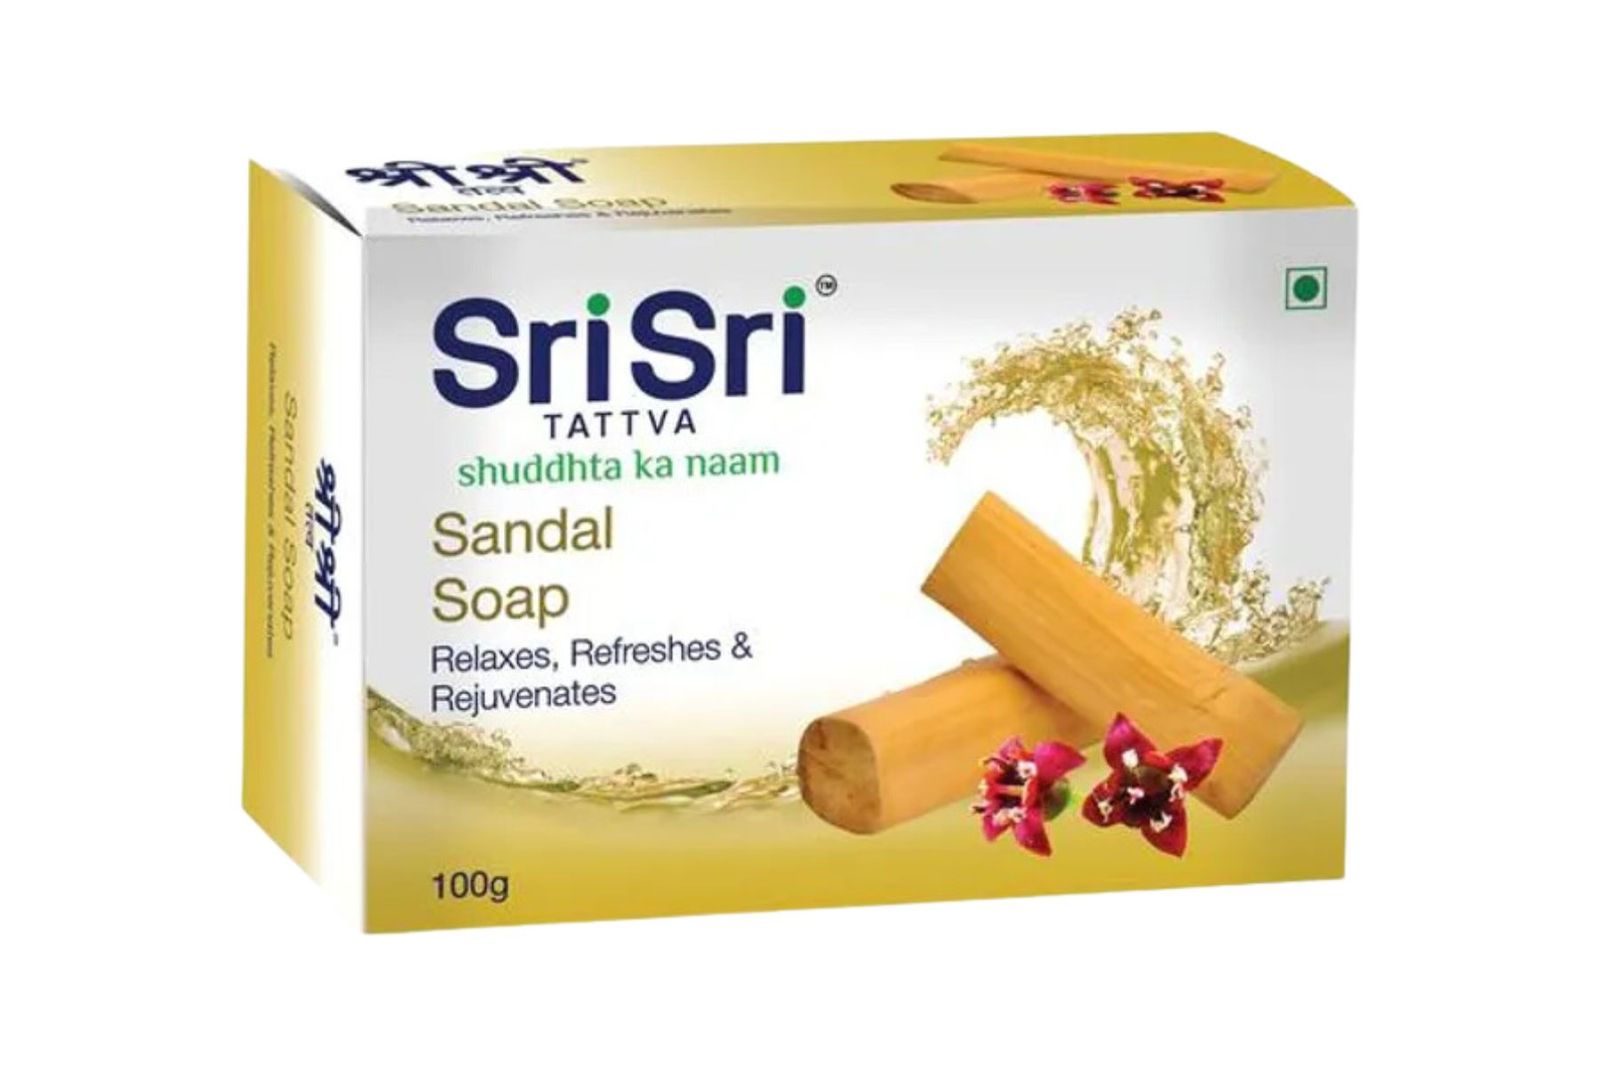 Sri Sri Tattva Sandal Soap